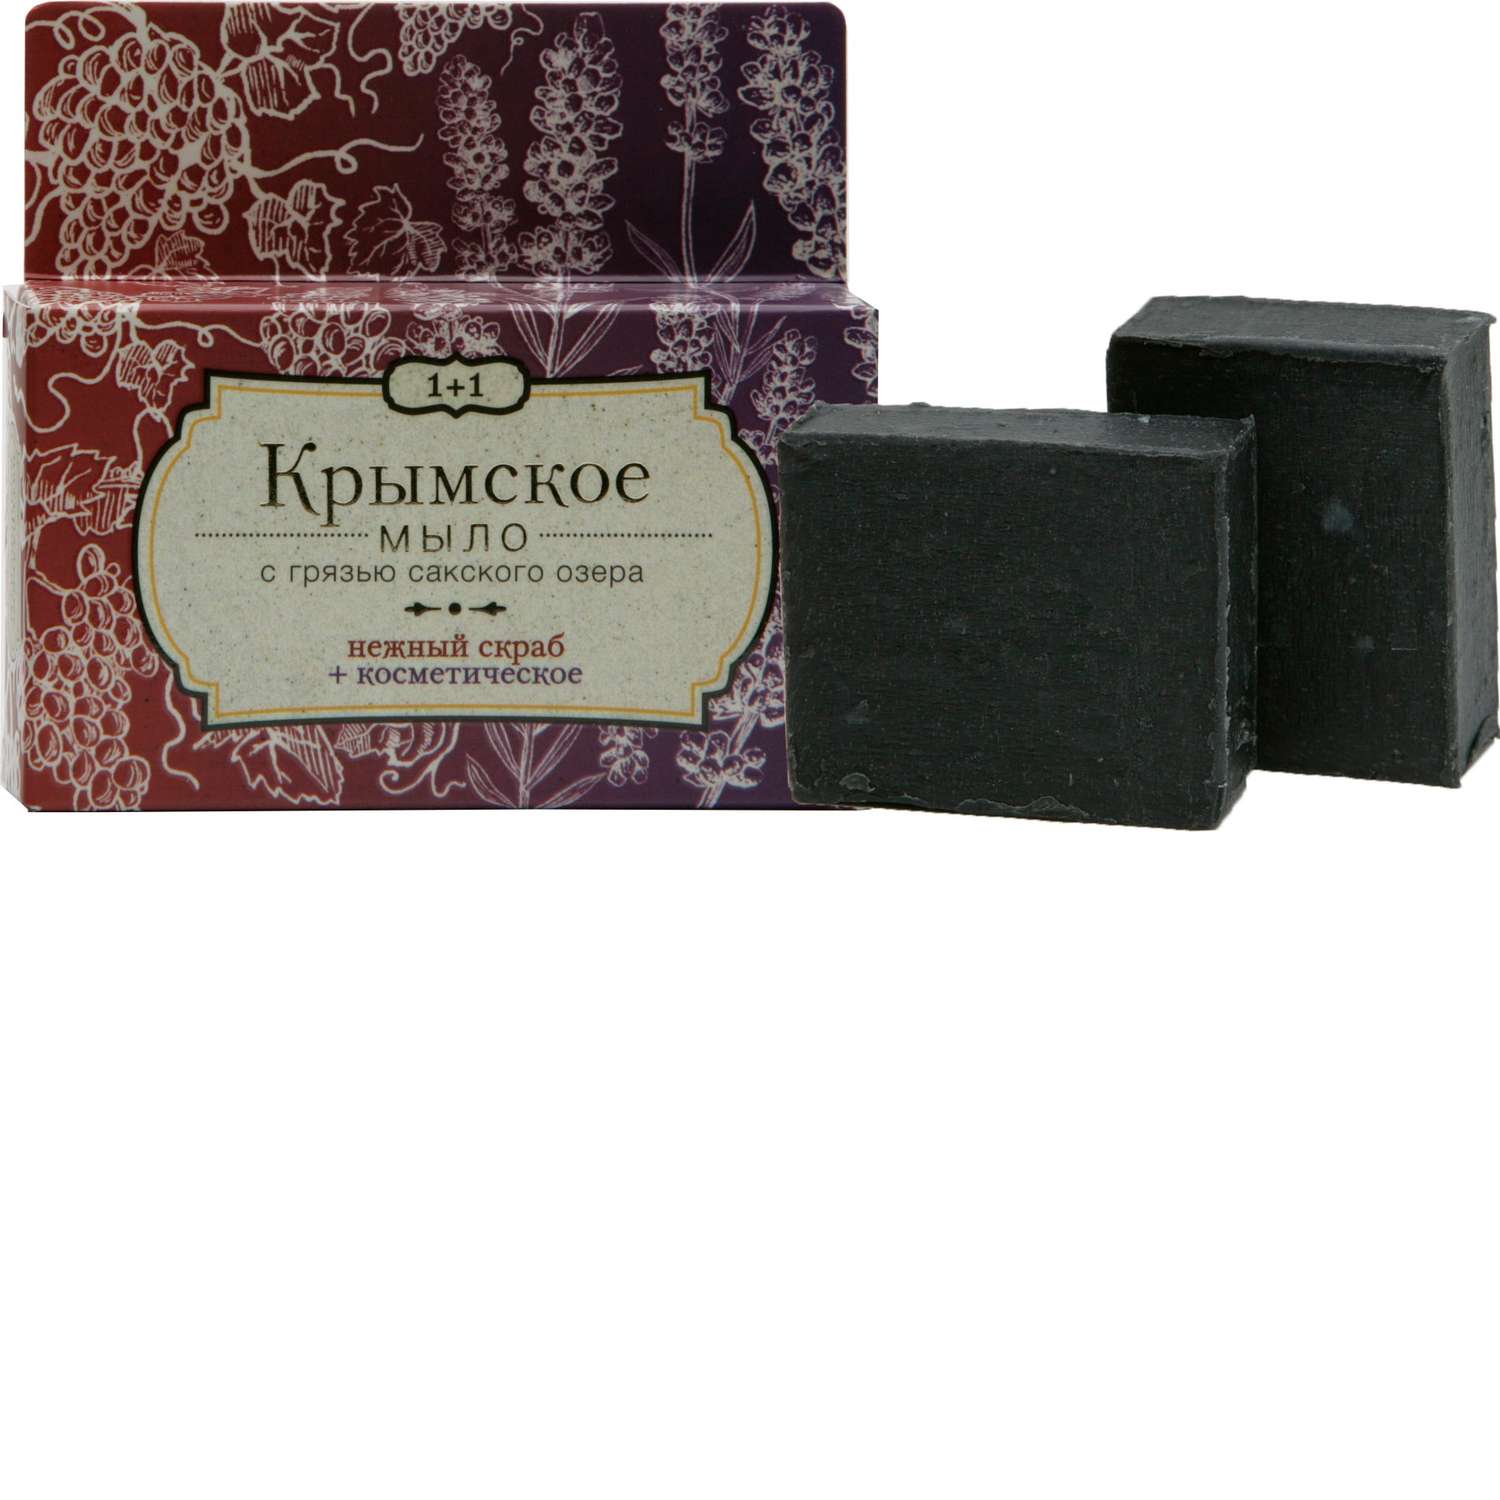 Крымское мыло с грязью Сакские Грязи 1+1 Нежный пилинг+Косметическое - фото 1